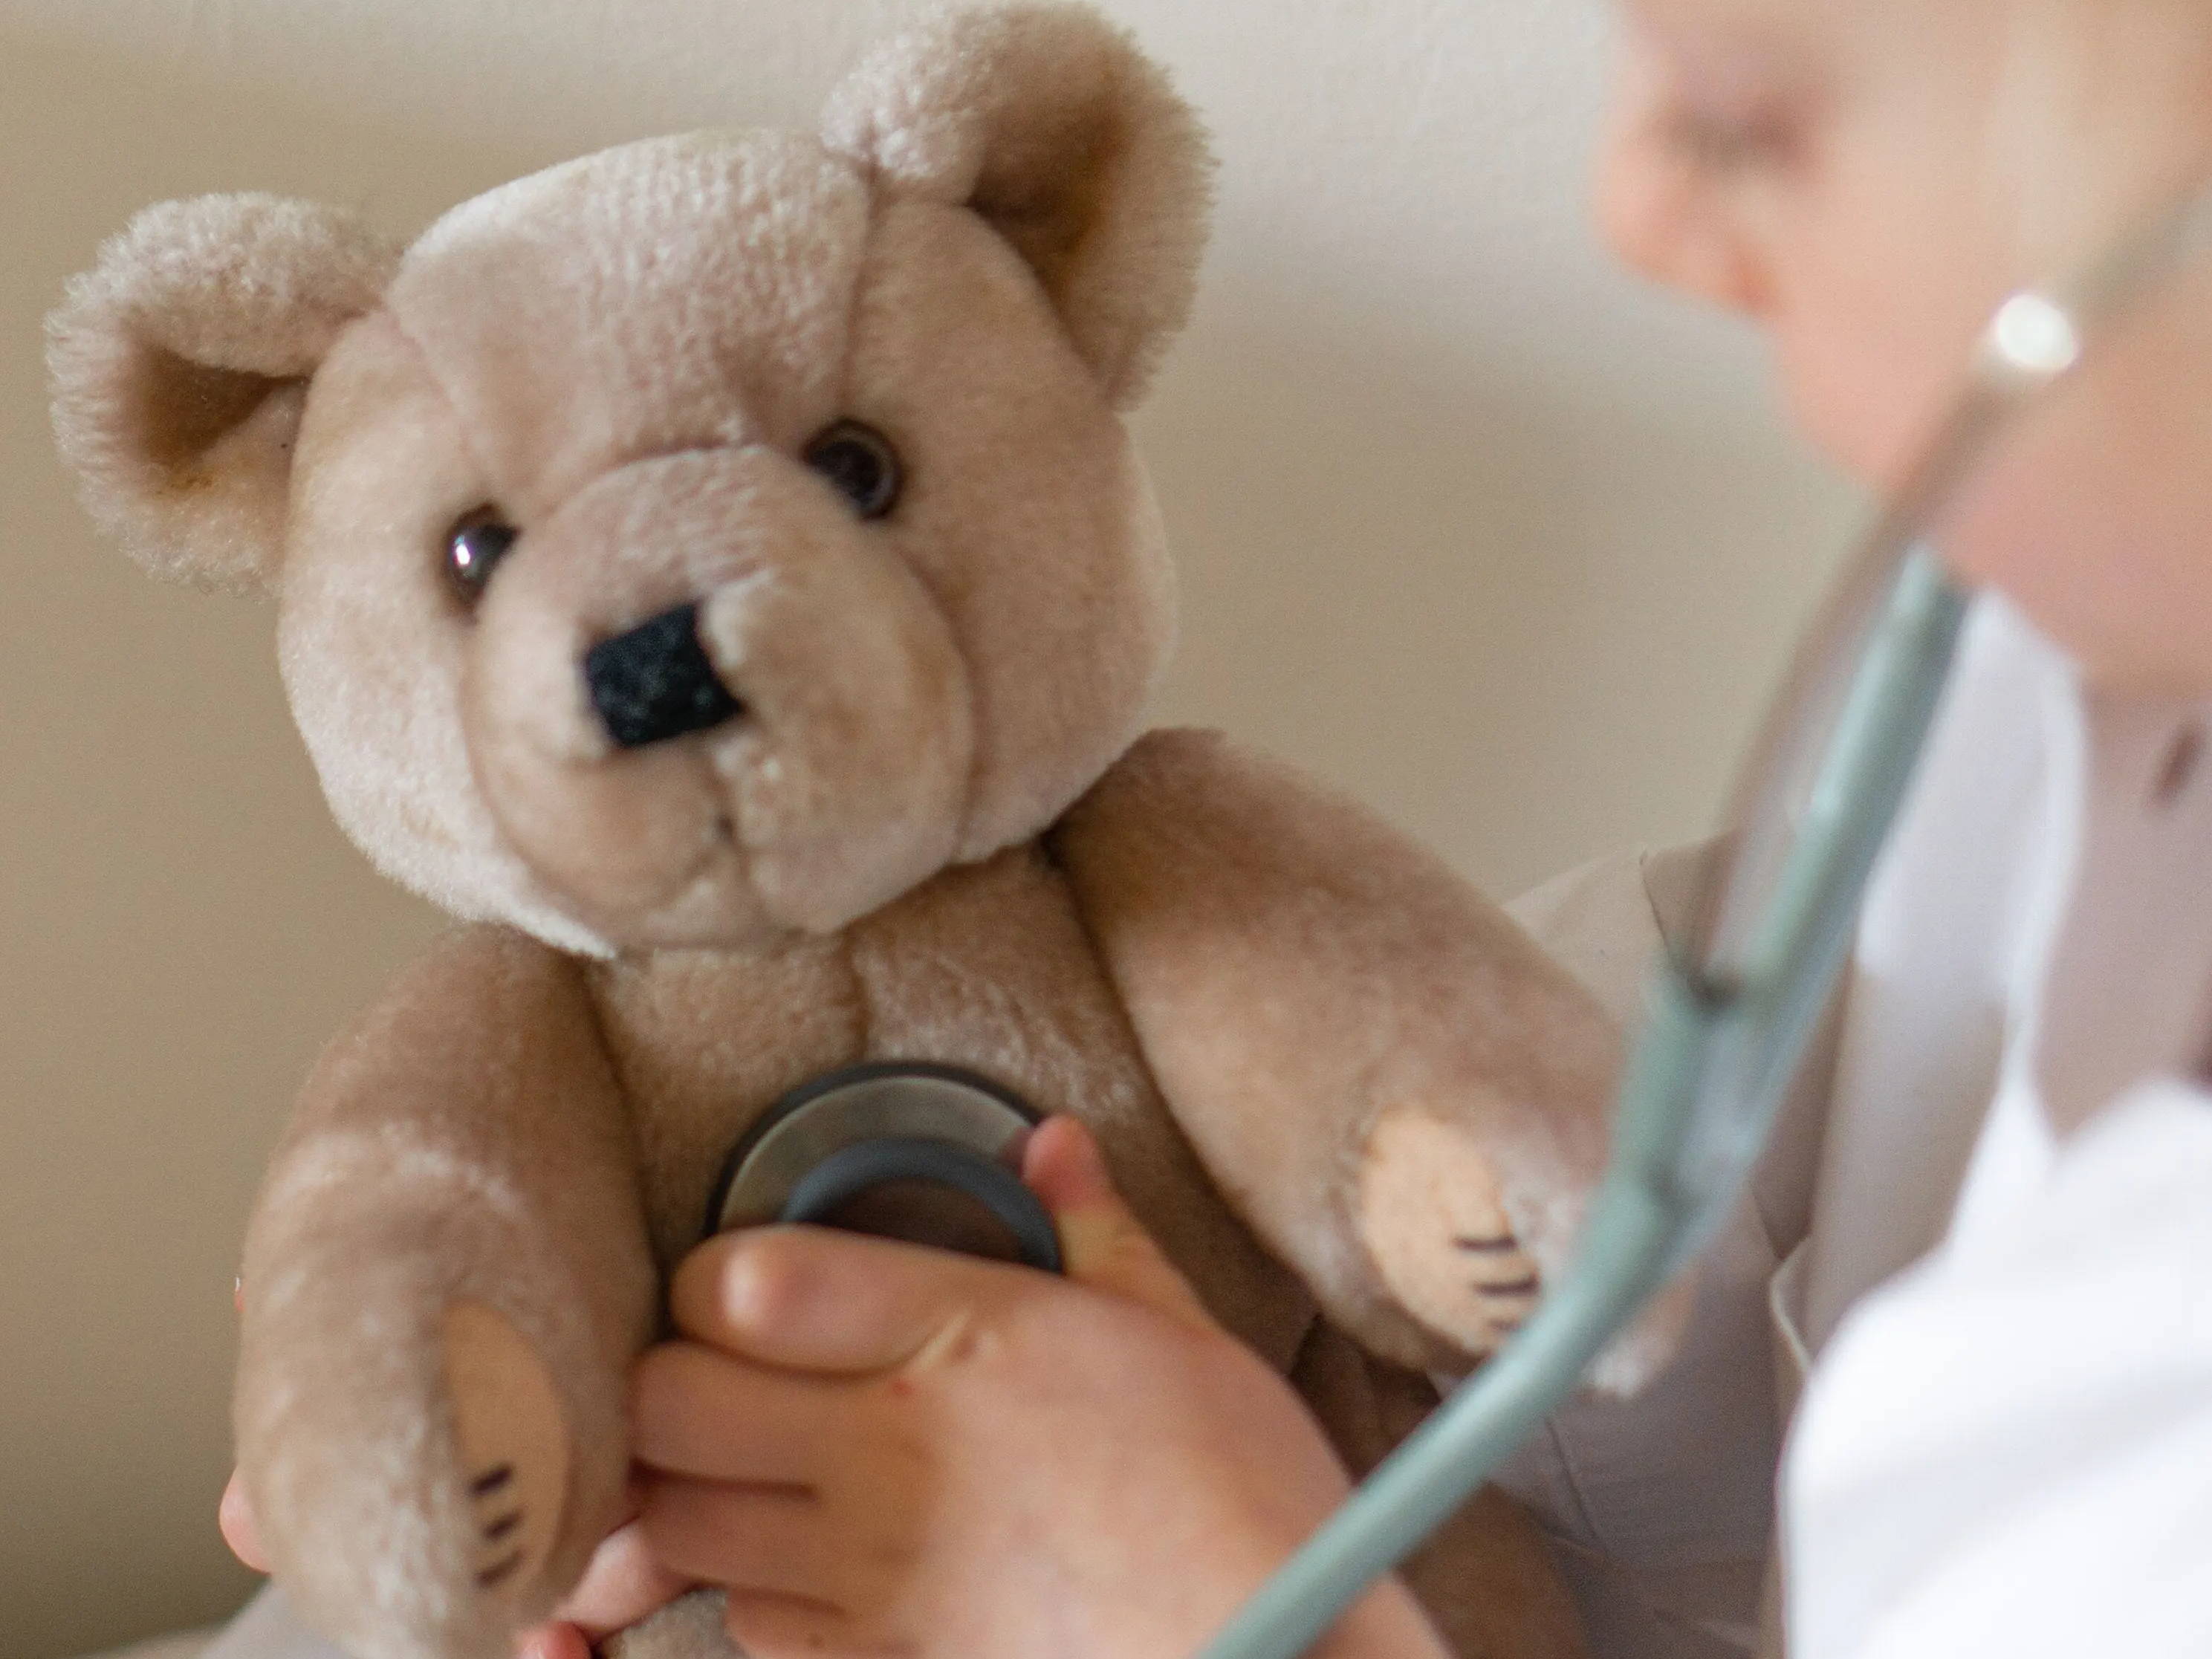 Enfant portant un manteau blanc jouant au médecin - il utilise un stéthoscope pour examiner son ourson en peluche